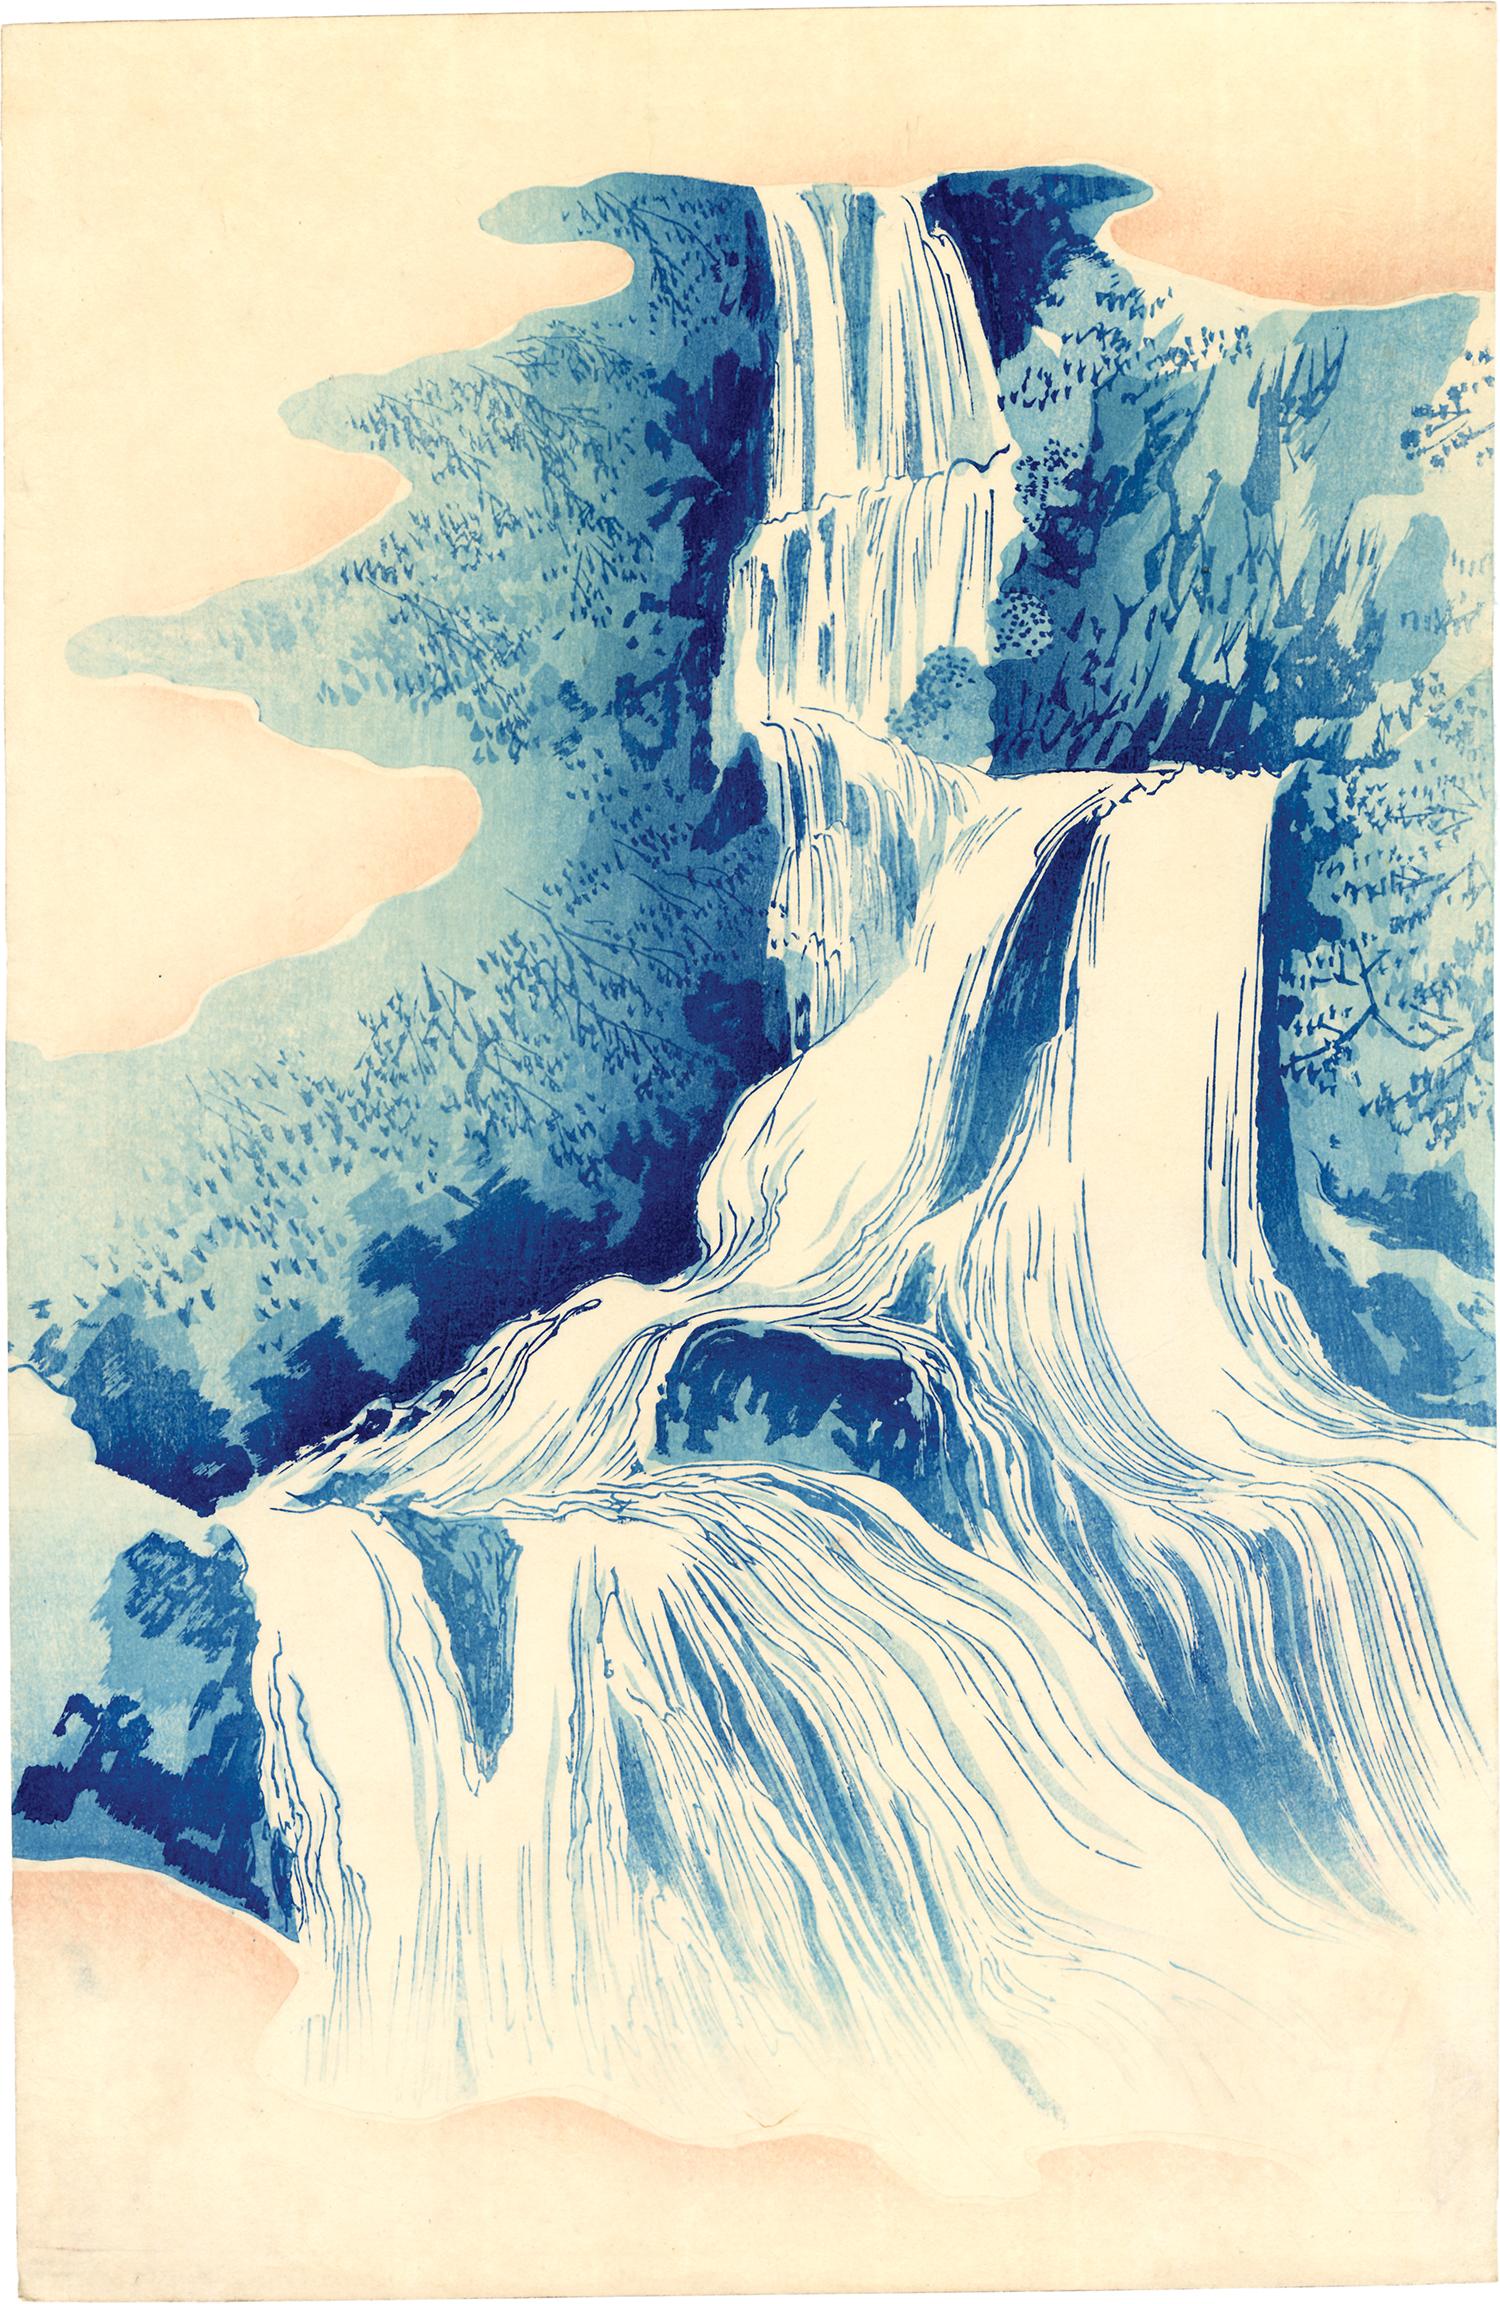 Japanese Beauty Admiring Kirifuri Waterfall - Print by CHIKANOBU, Yoshu